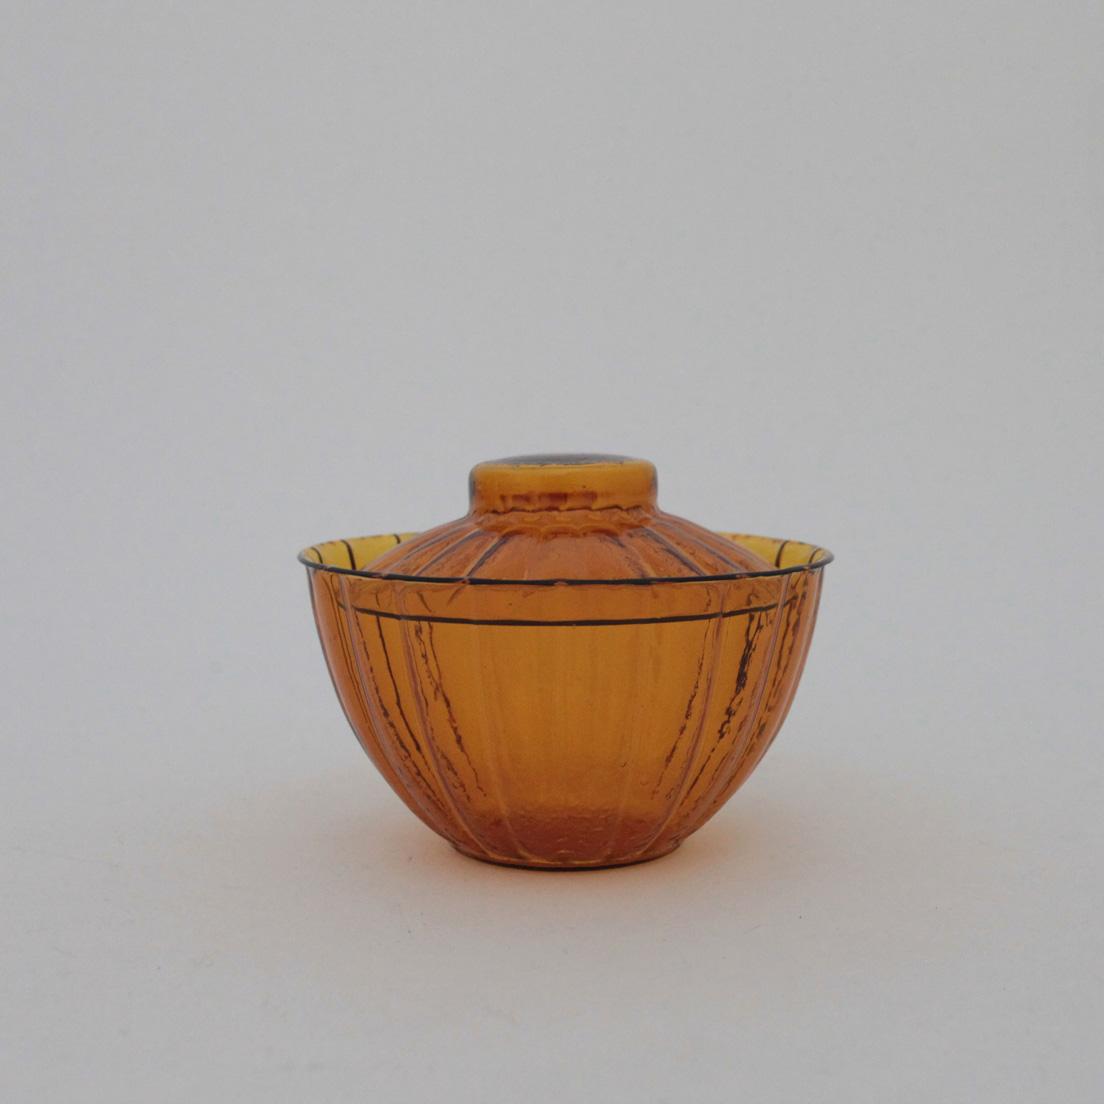 「褐色菊型蓋付碗」45,000円。W12.4×H9.5cm。